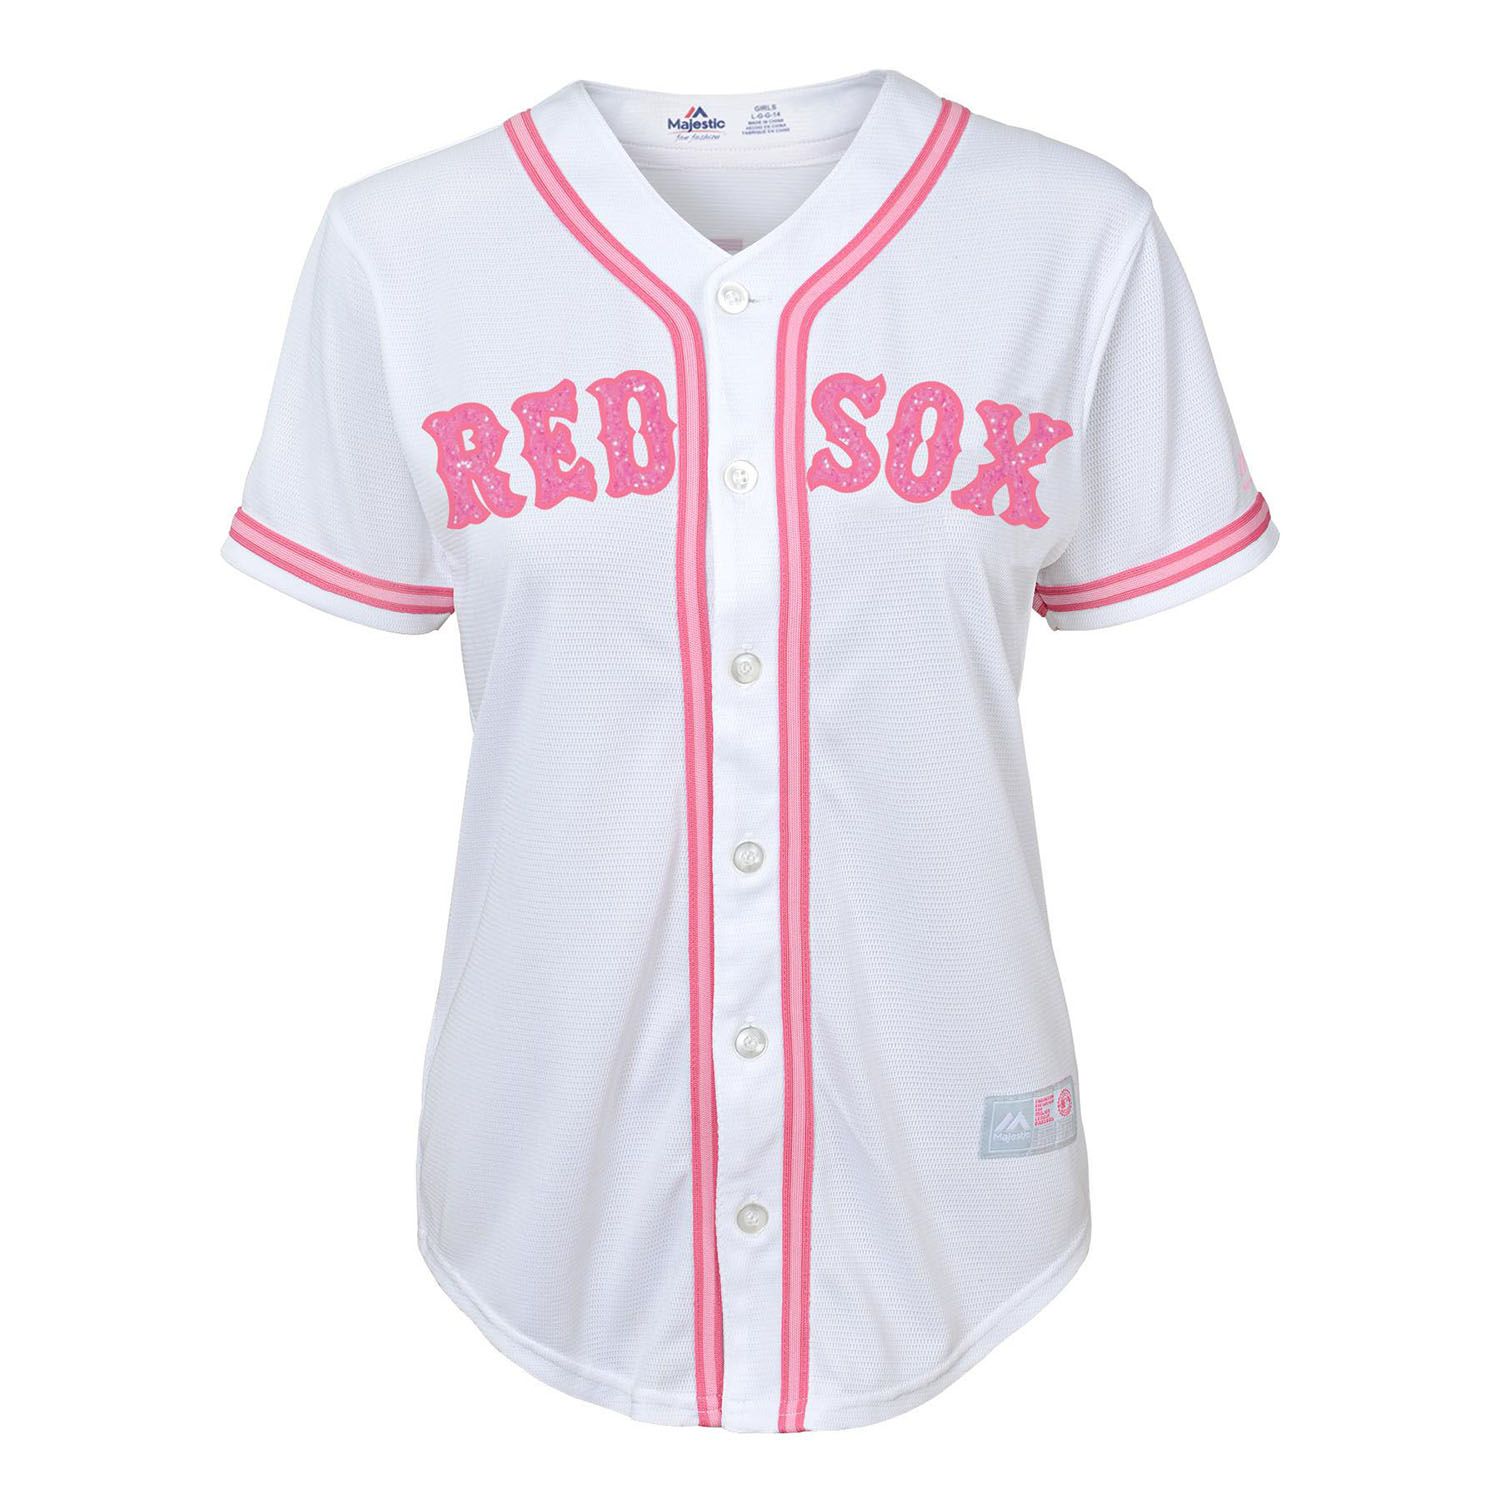 7-16 Majestic Boston Red Sox Fashion Jersey